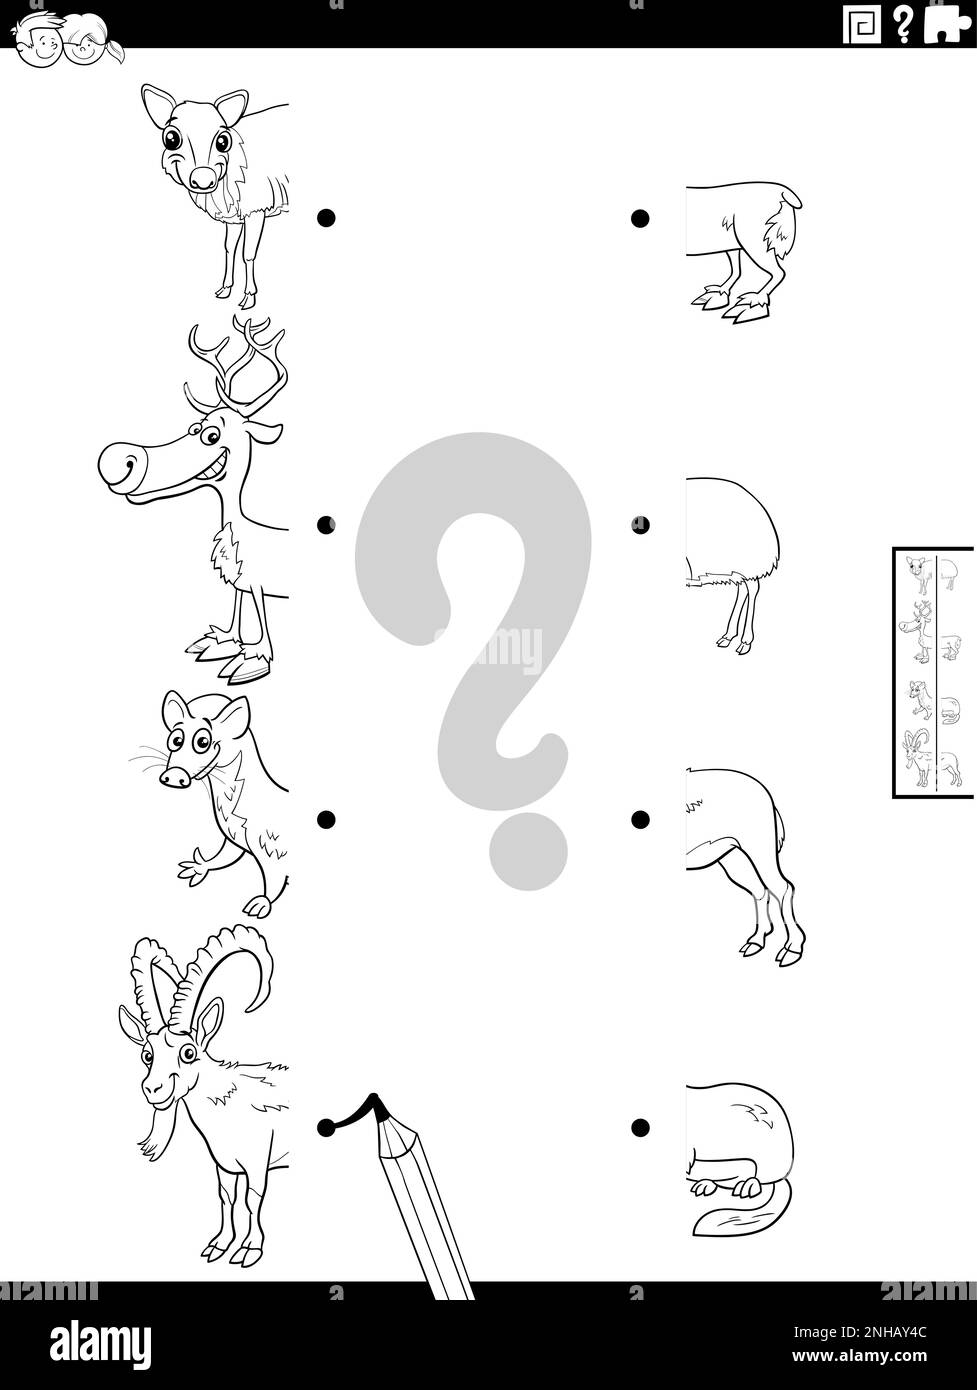 Dessin animé noir et blanc illustration du jeu éducatif de l'appariement des moitiés d'images avec les personnages sauvages drôle de page de coloration Illustration de Vecteur